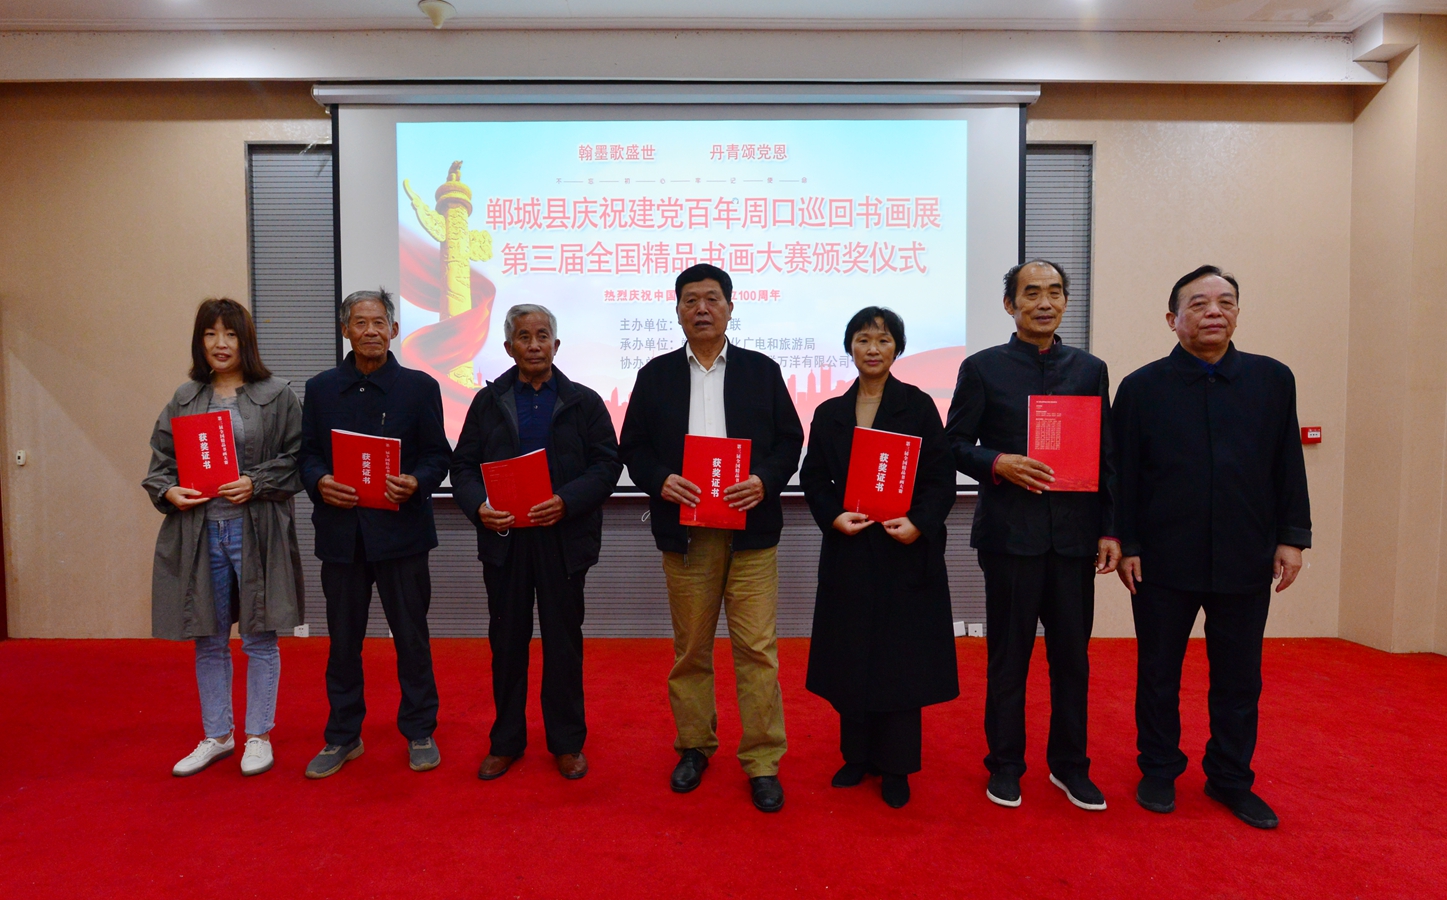 郸城县庆祝建党100周年周口巡回书画展获奖名单